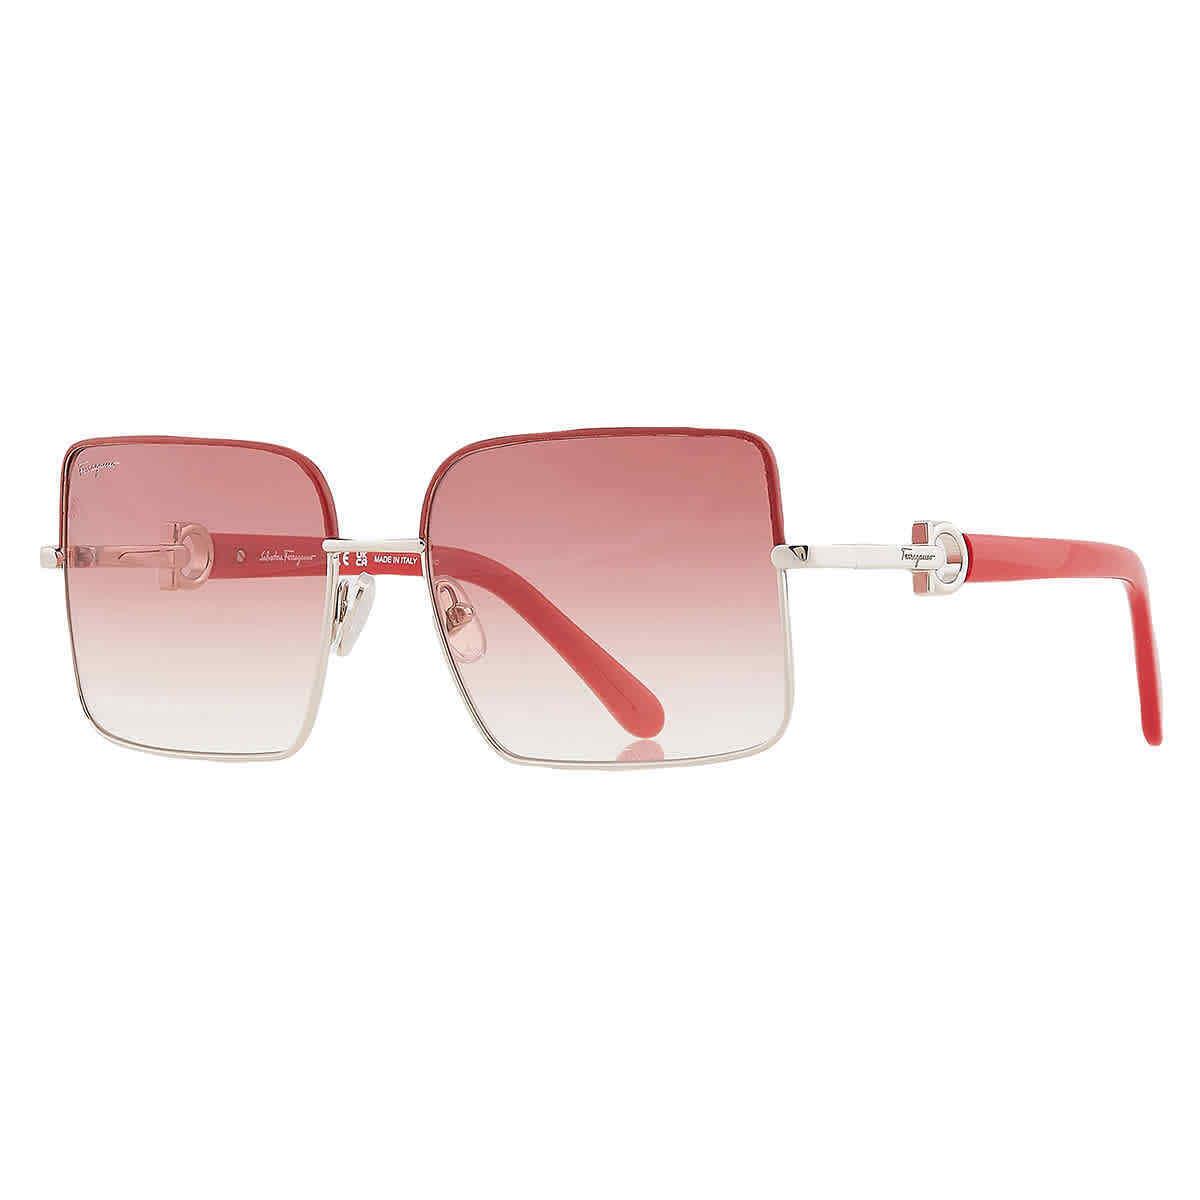 Salvatore Ferragamo Burgundy Gradient Sport Ladies Sunglasses SF302SL 049 60